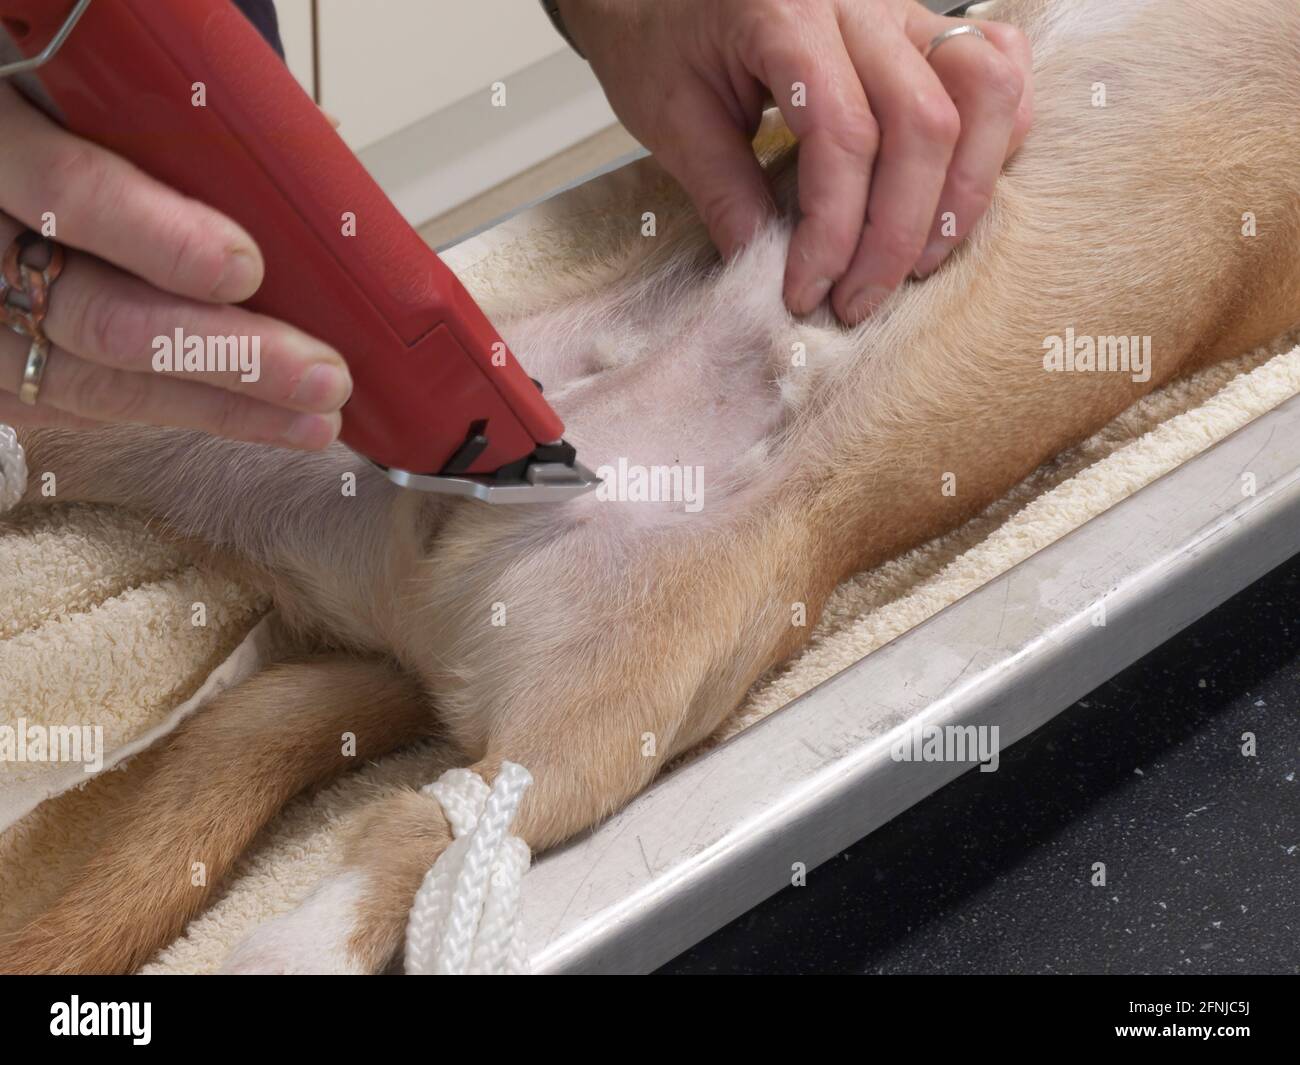 Ein Assistenzarzt eines Tierarztes bereitet bereits einen Hund vor Er wird  kastriert, indem er seinen Bauch und Hodensack rasiert Mit einem  Rasiermesser Stockfotografie - Alamy